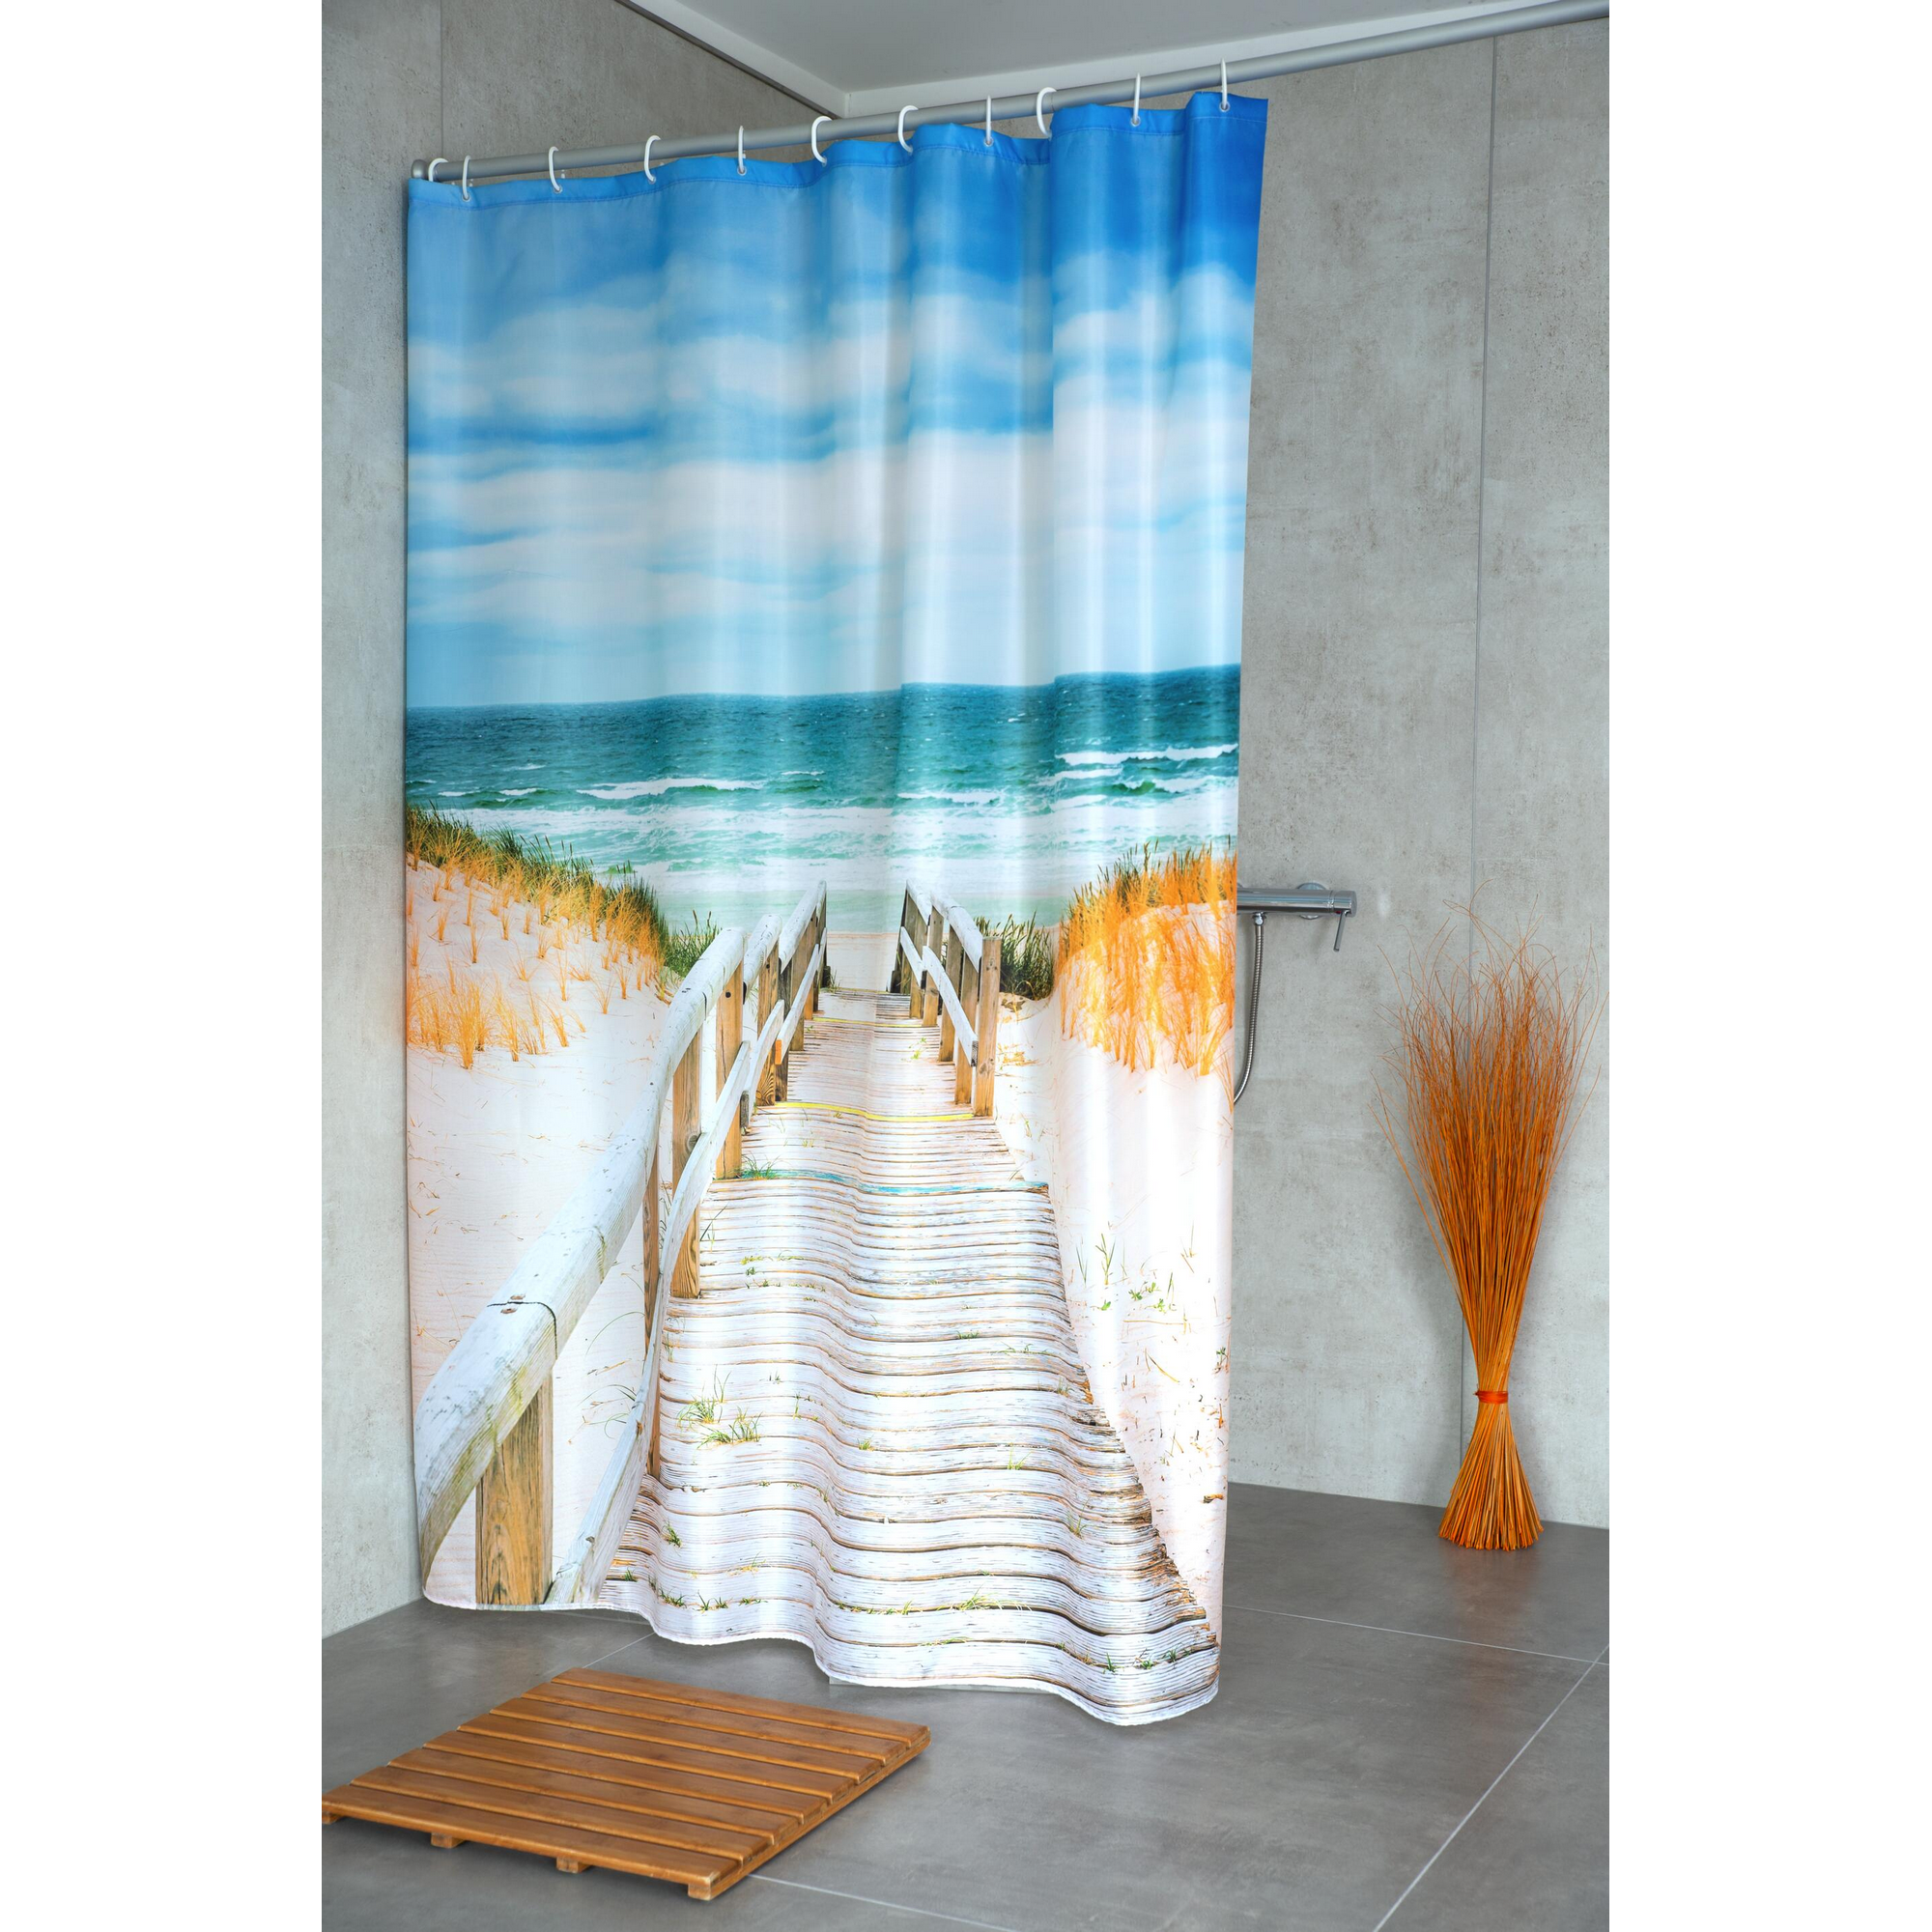 Duschvorhang 'Nordsee' Textil multicolor 180 x 200 cm + product picture